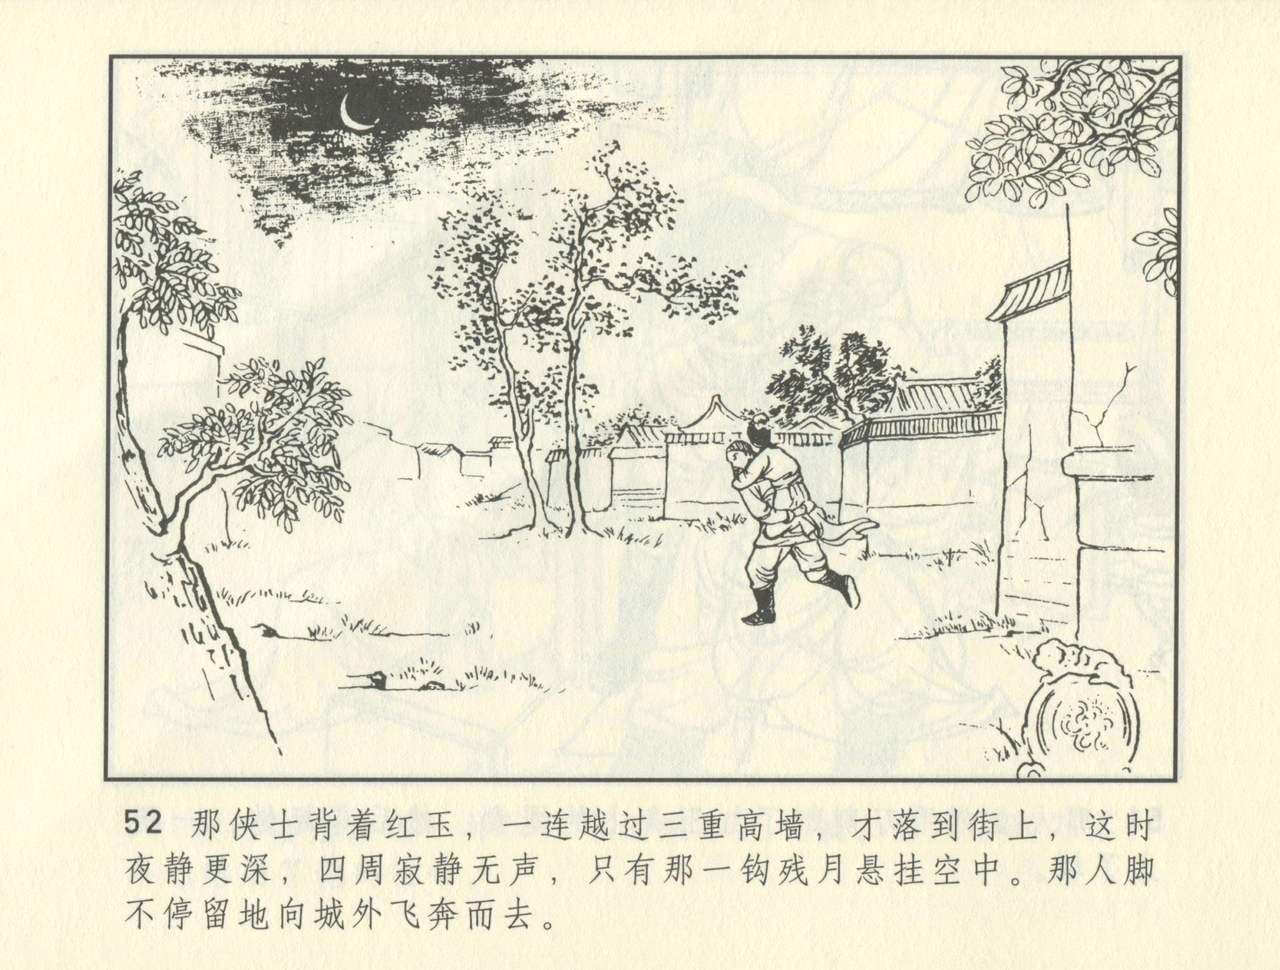 聊斋志异 张玮等绘 天津人民美术出版社 卷二十一 ~ 三十 392